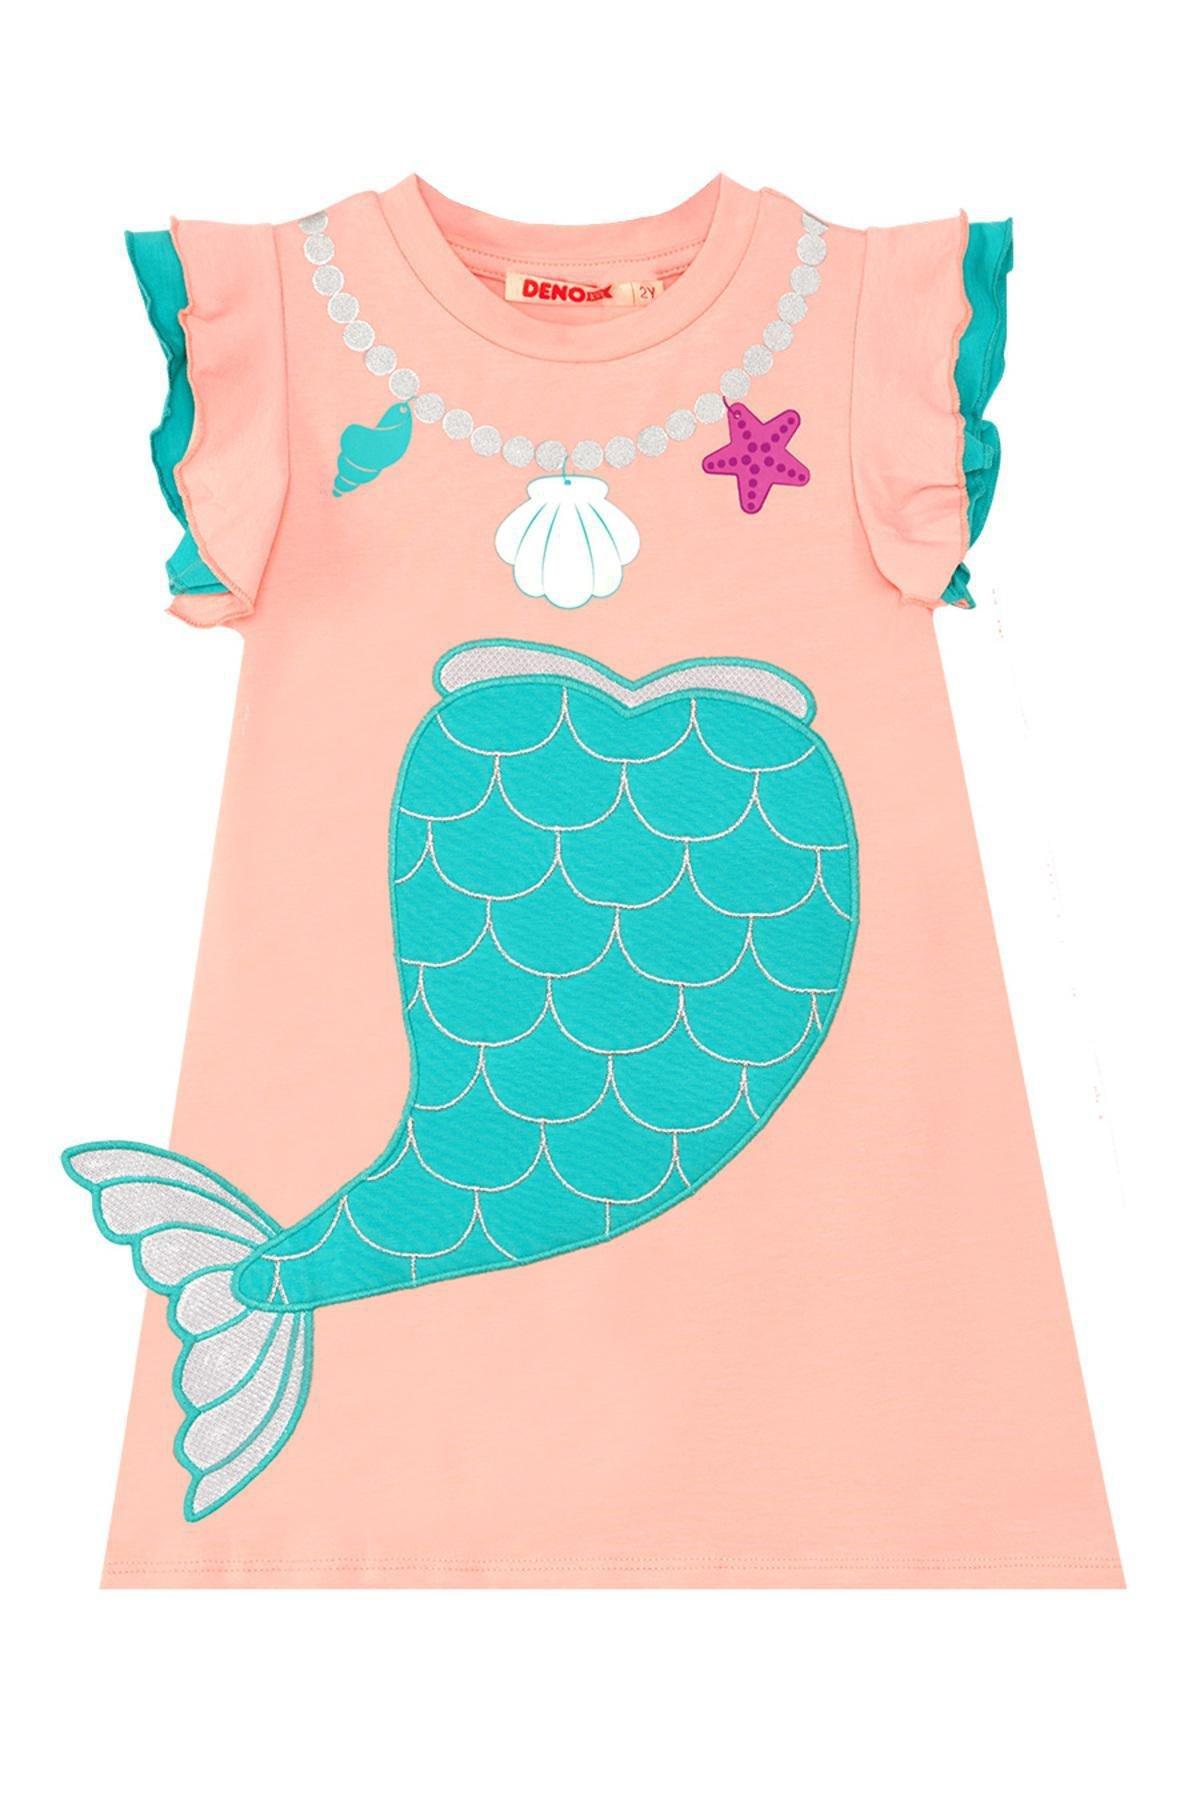 Denokids - Mermaid Pink Girls Dress